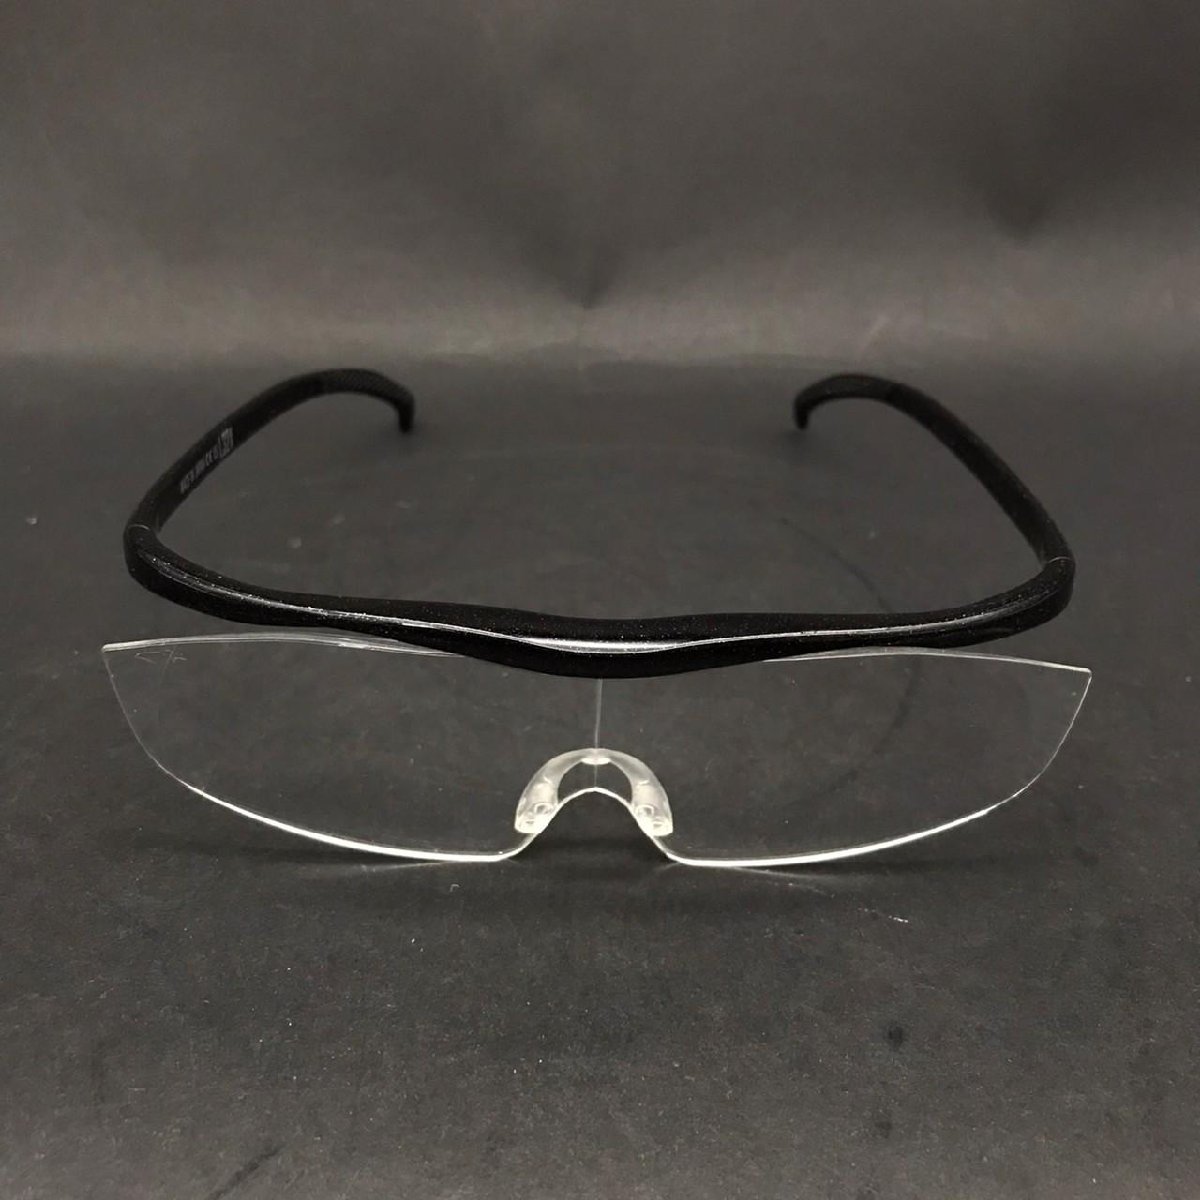 FG0721-8-3 Hazuki ハズキルーペ LS 1.32X ブラック 眼鏡タイプ クリアレンズ 拡大鏡 老眼鏡 めがね 日本製 60サイズ_画像3